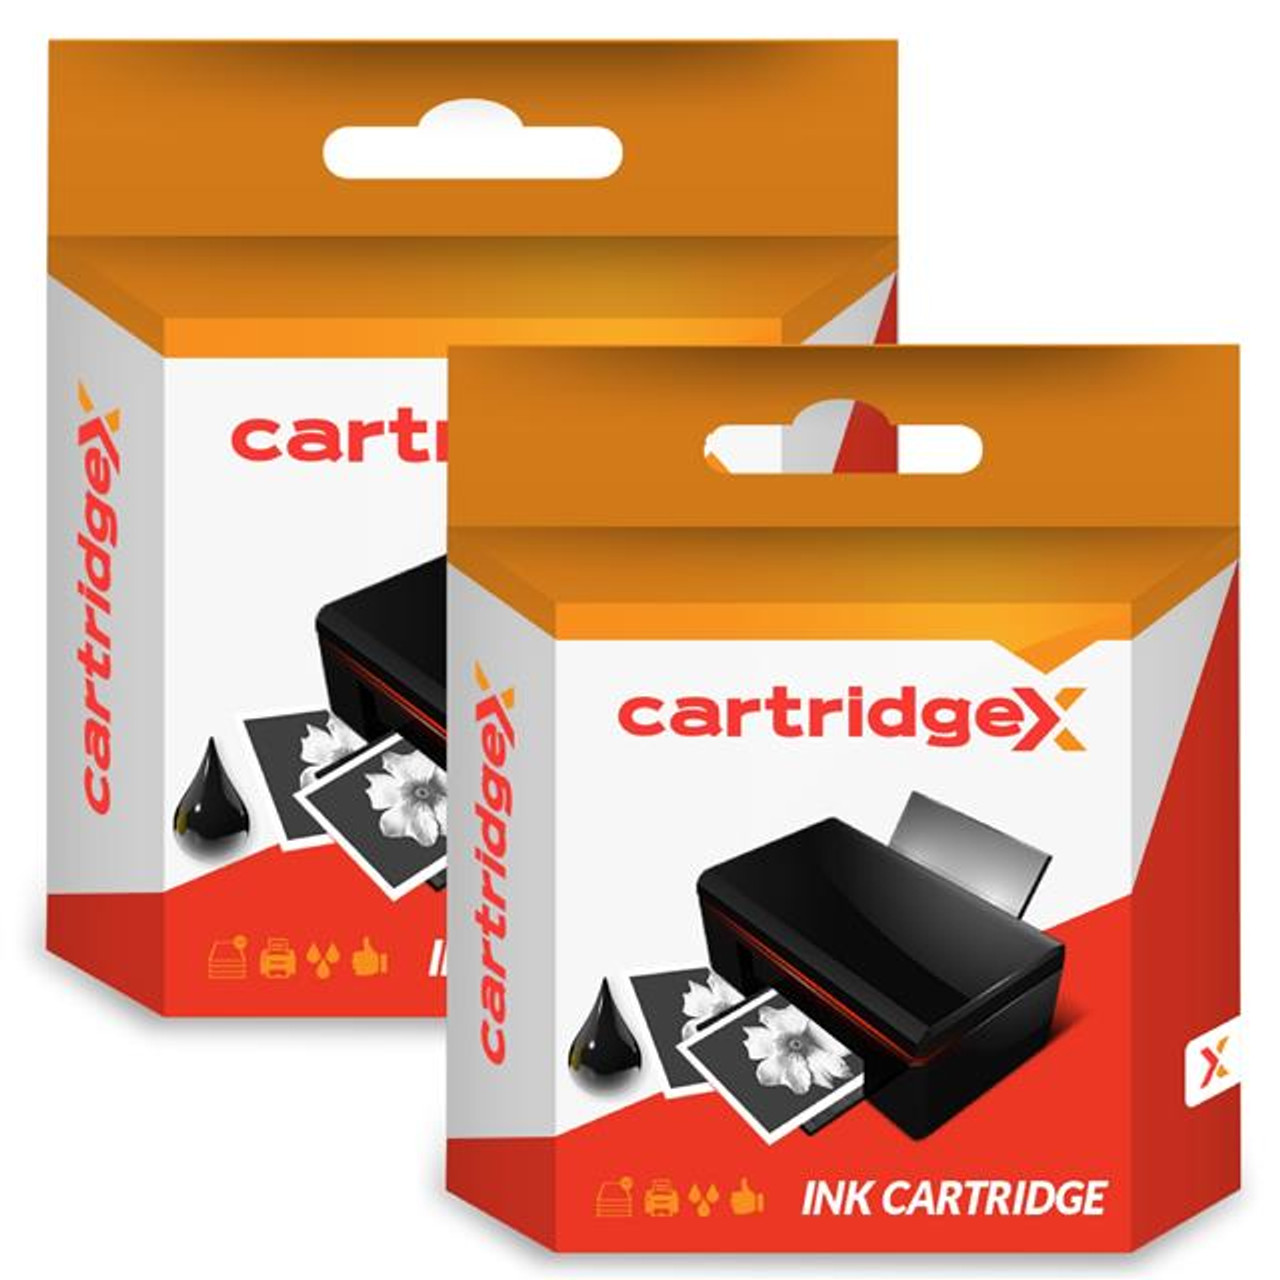 Compatible 2 X Black Ink Cartridge For Canon Pixma Mp980 Mp990 Mx860 Cli-521 Bk